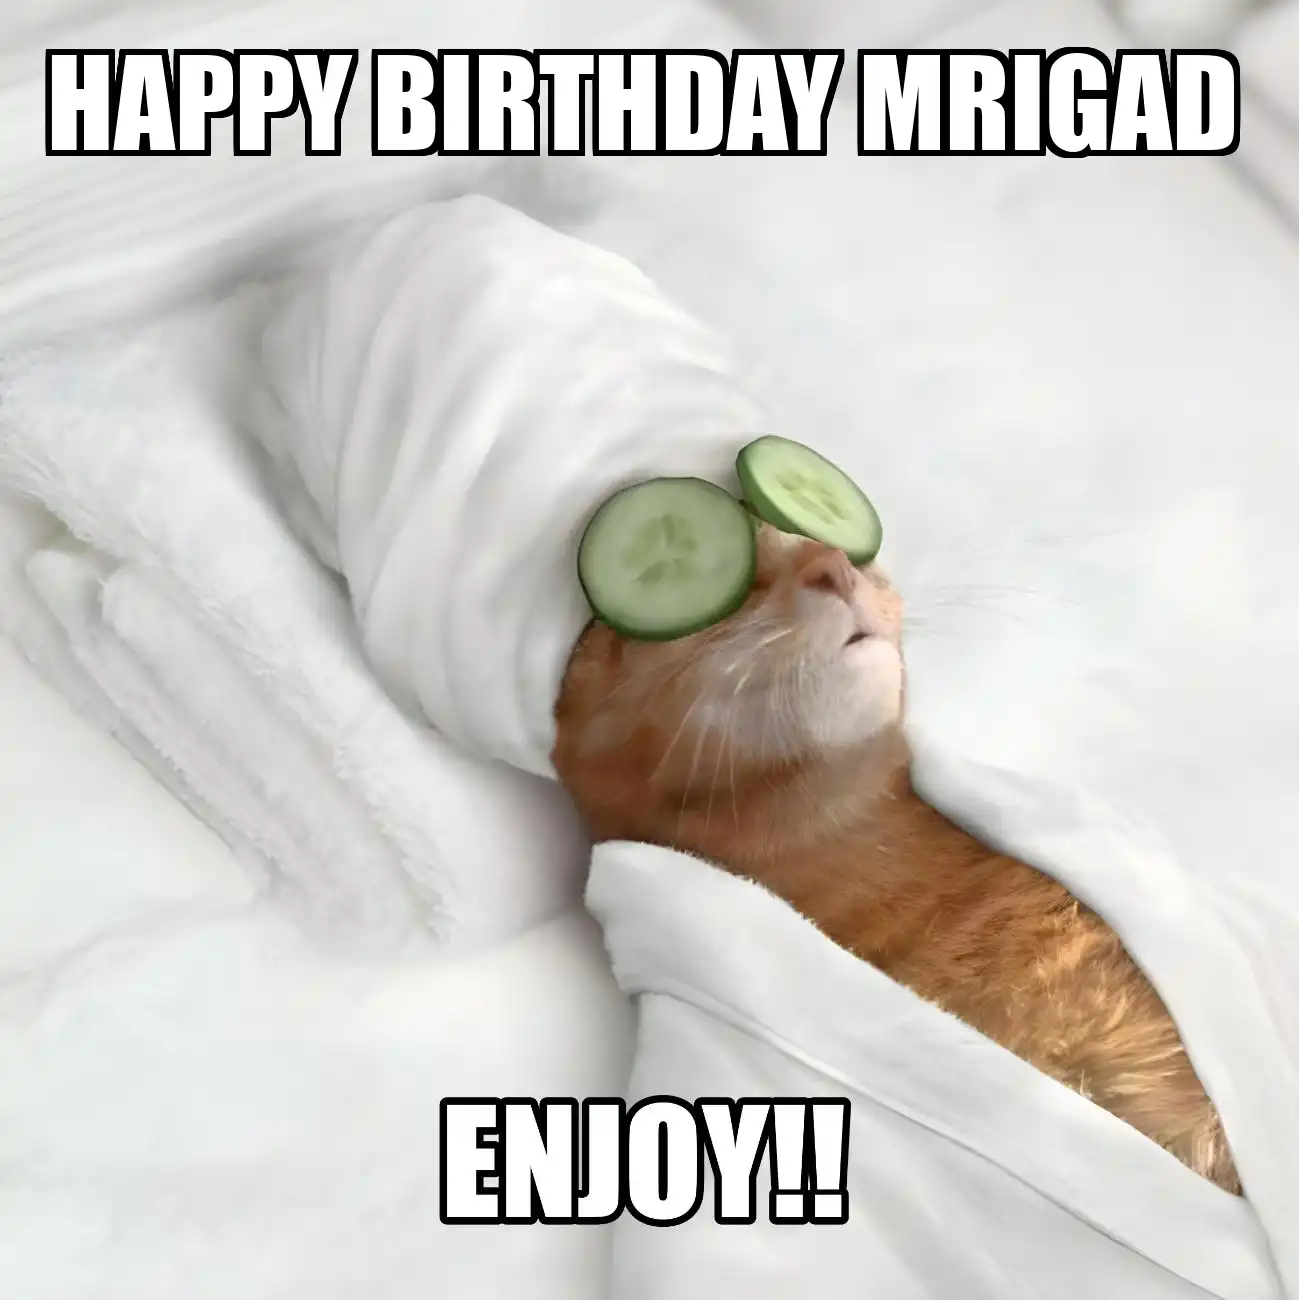 Happy Birthday Mrigad Enjoy Cat Meme